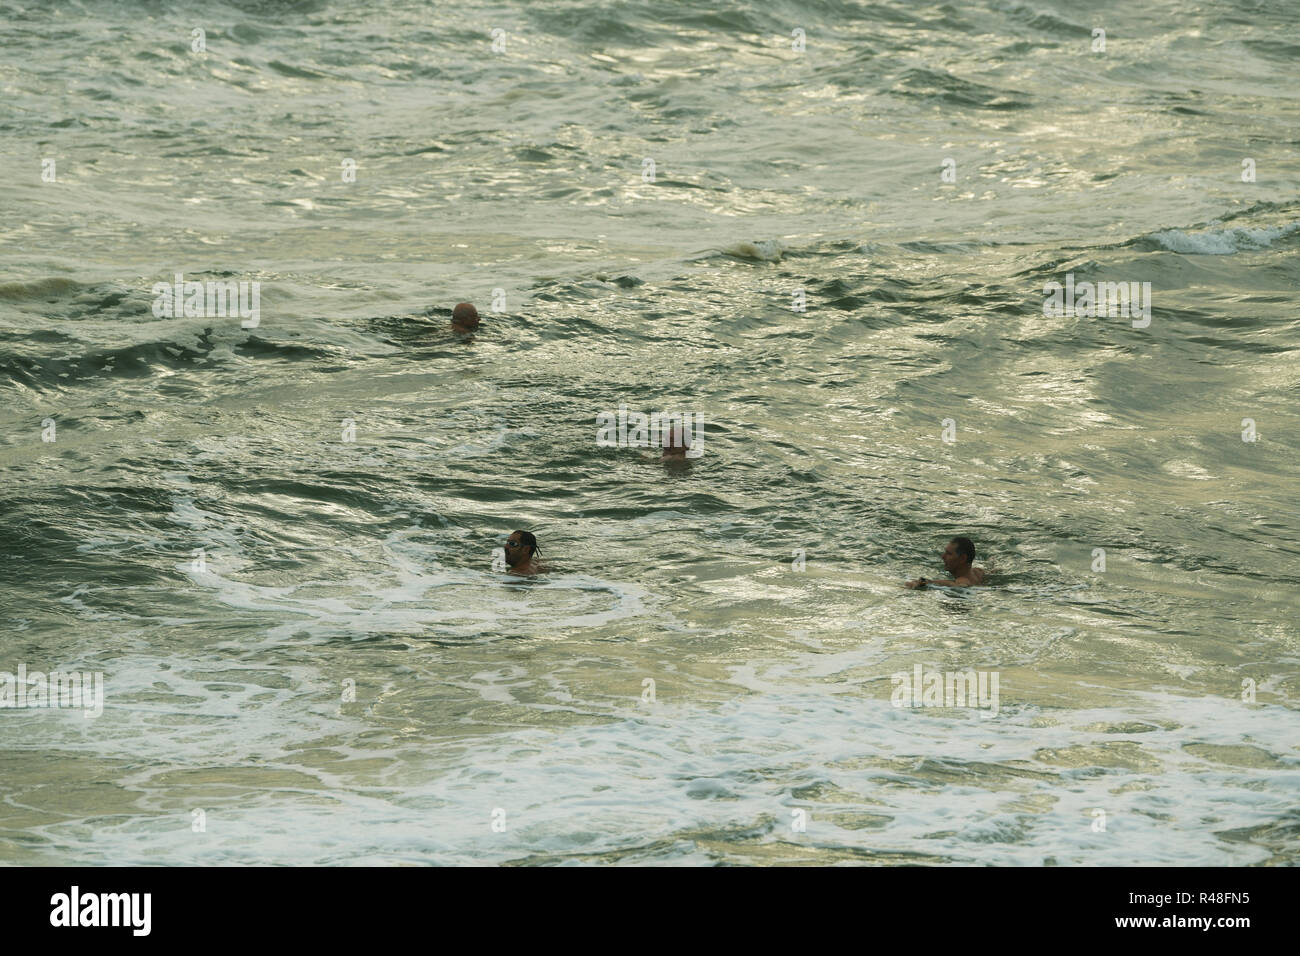 El grupo de cuatro machos adultos de extrema nadadores de aguas abiertas de pedalear en el agua mientras nadan entrenamiento temprano en la mañana, Durban, KwaZulu-Natal, Sudáfrica Foto de stock